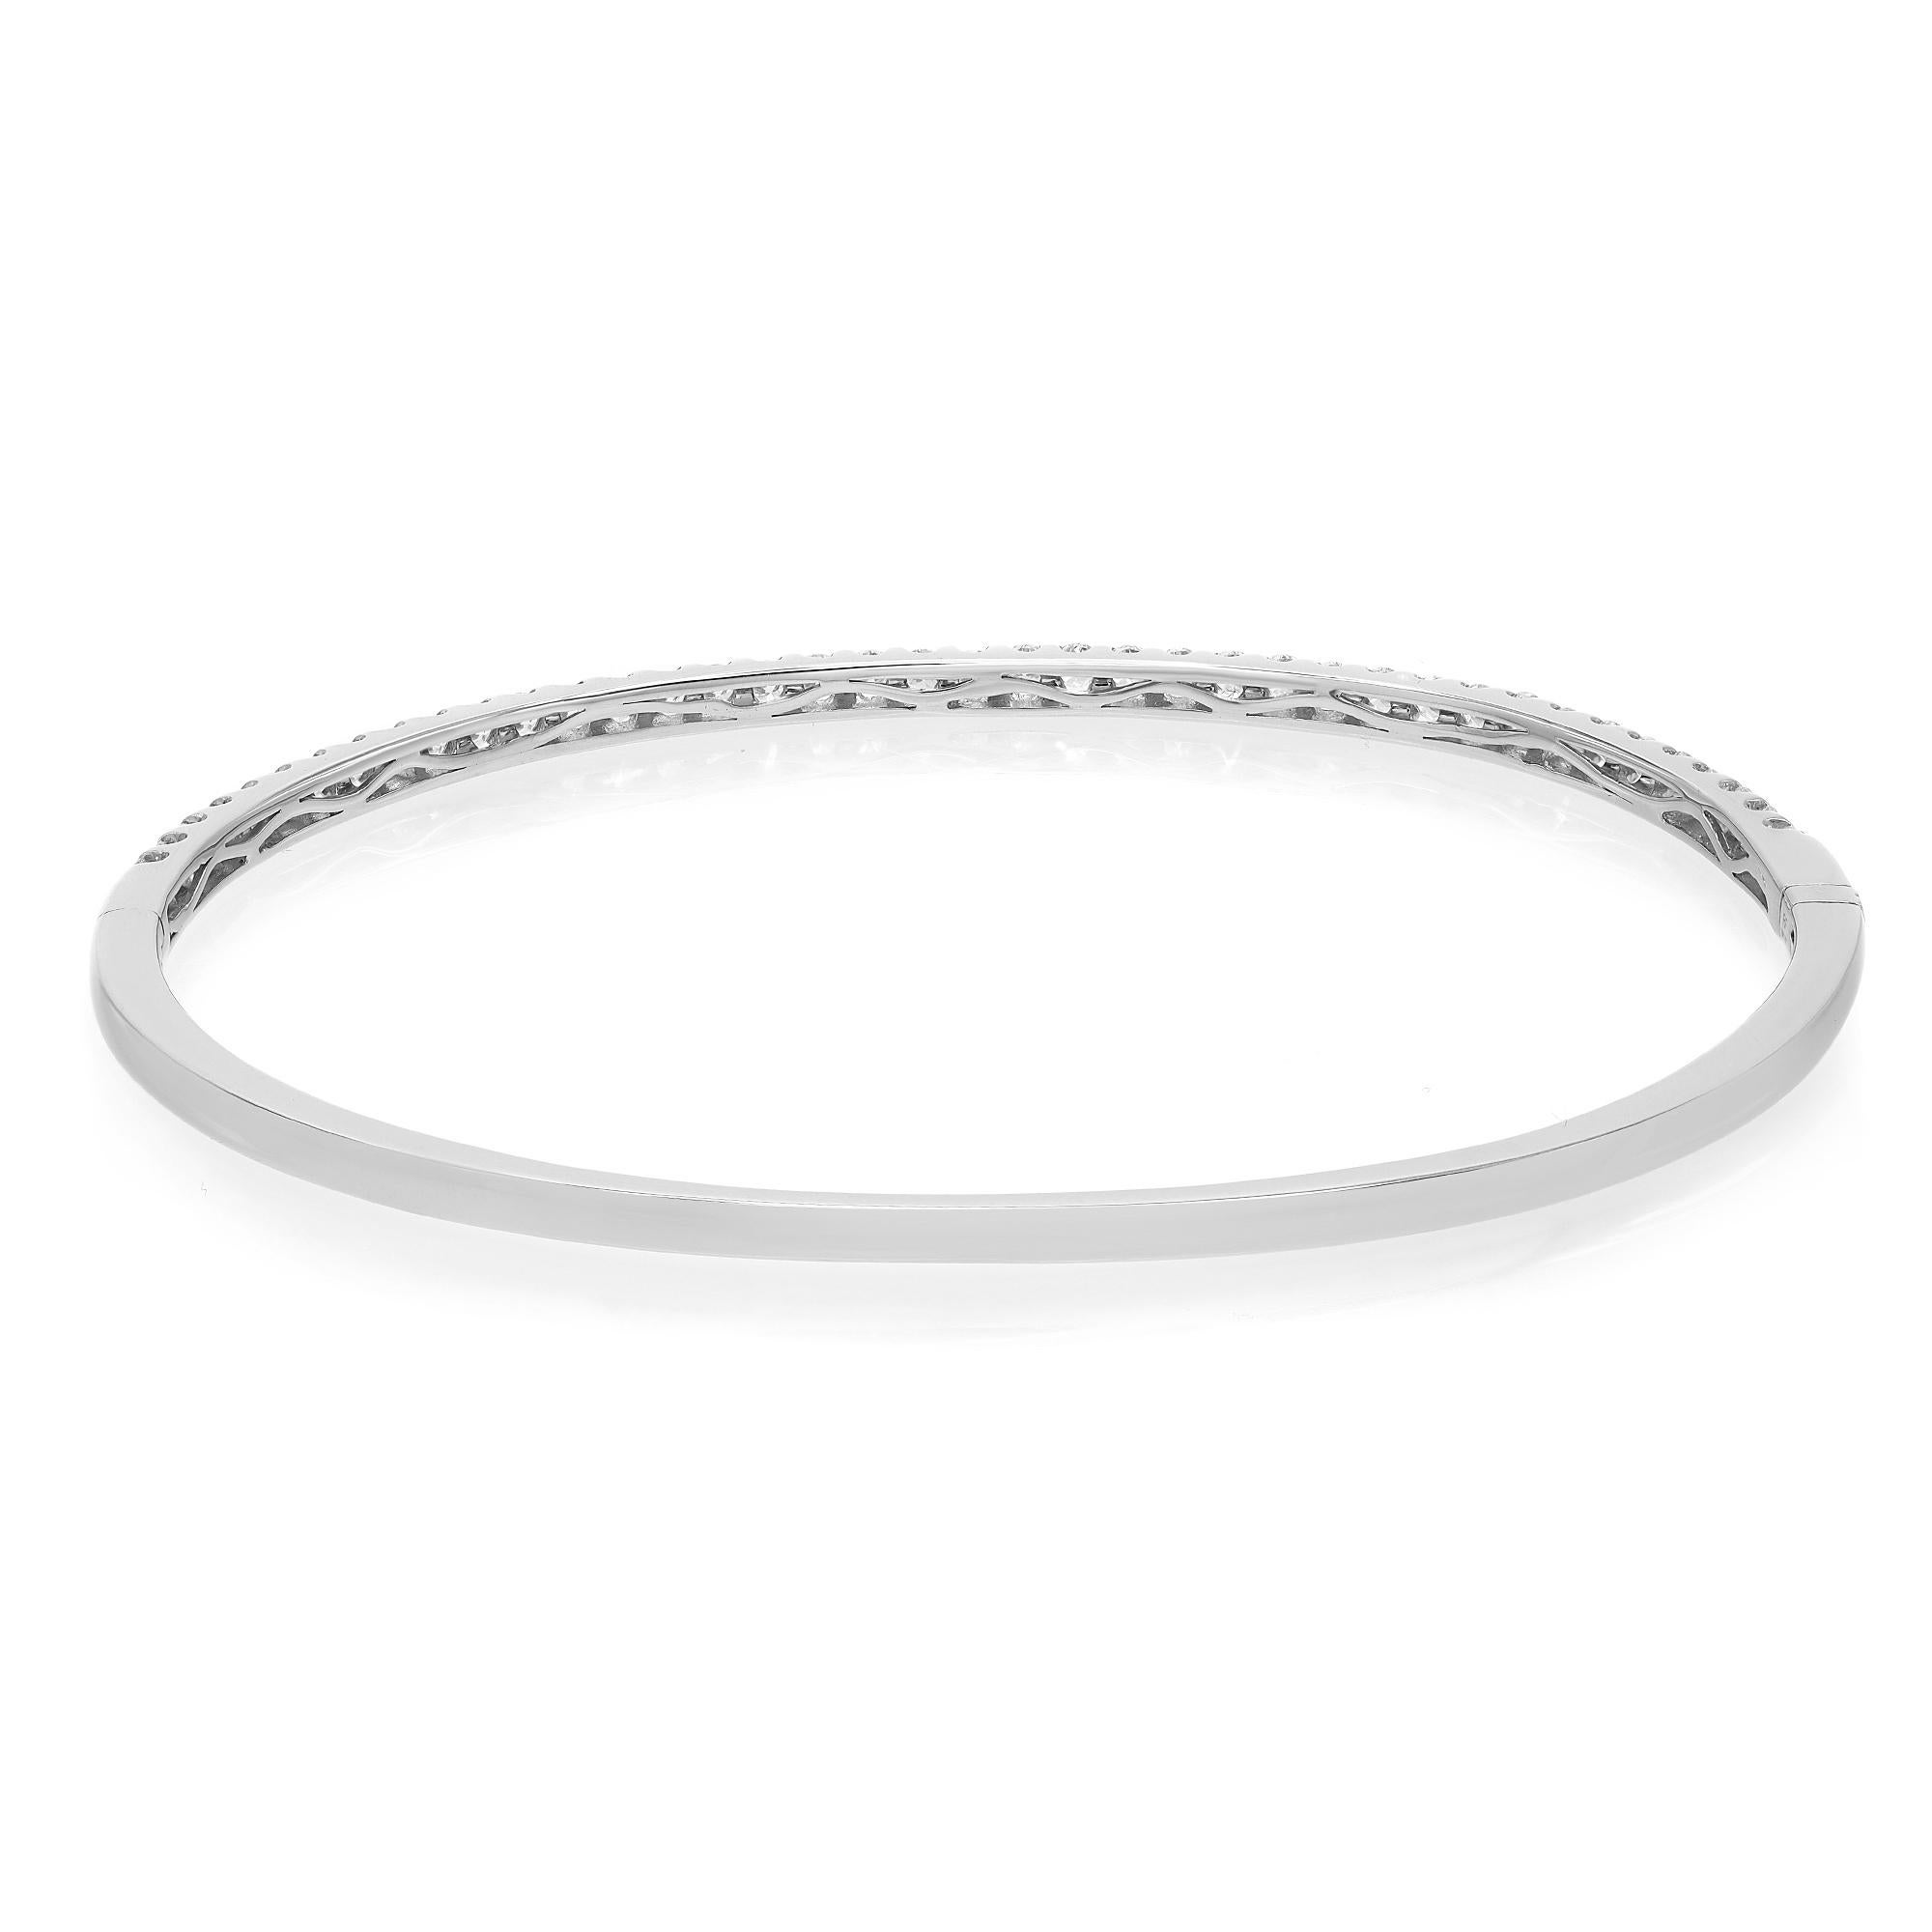 Modern Rachel Koen Round Cut Diamond Bangle Bracelet 18K White Gold 0.99Cttw For Sale